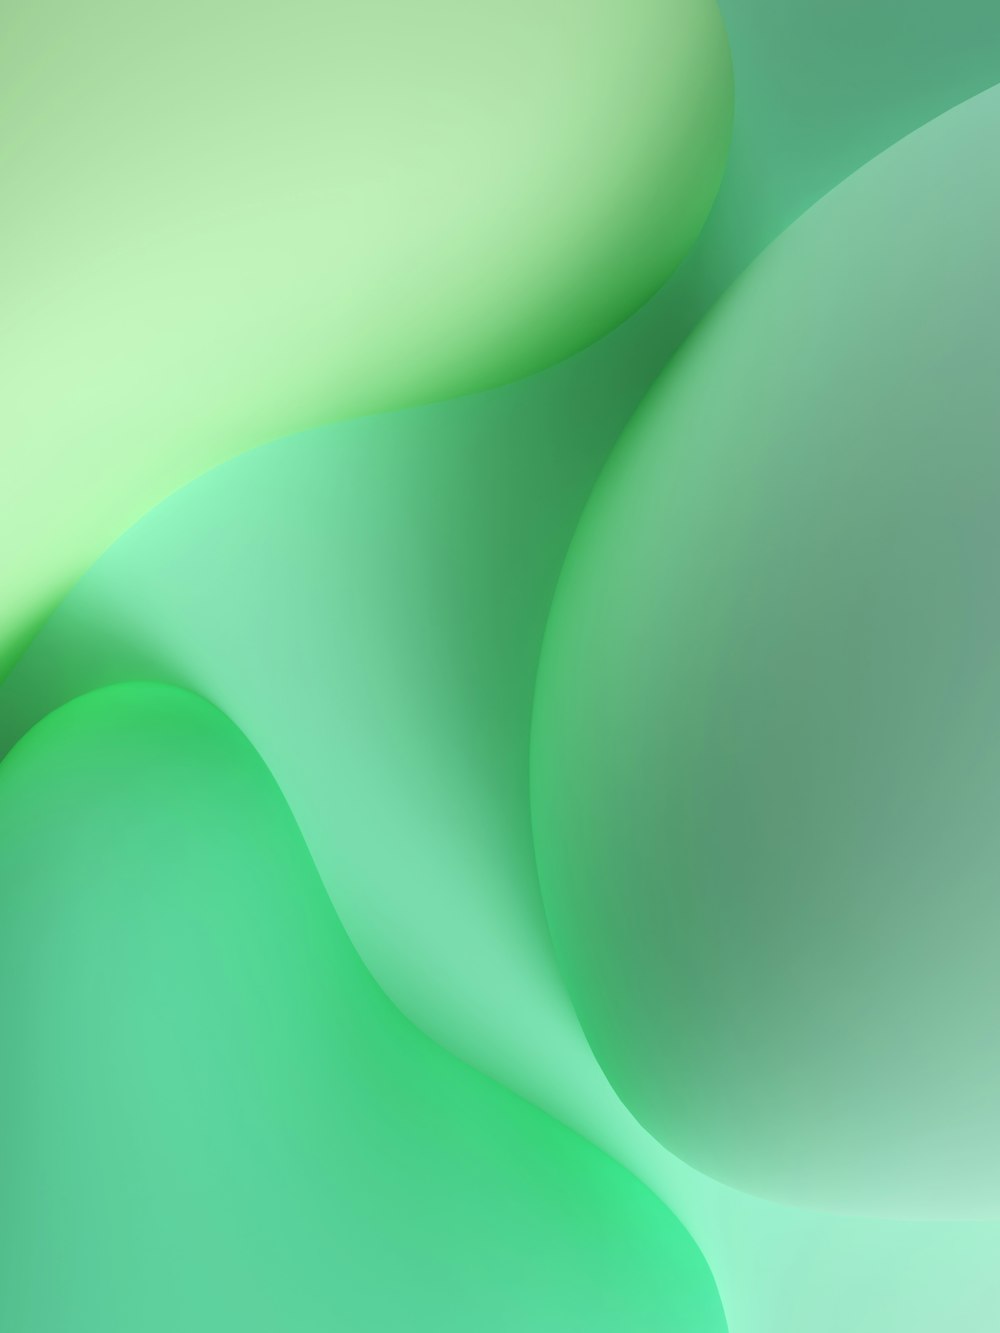 une image floue d’un arrière-plan vert